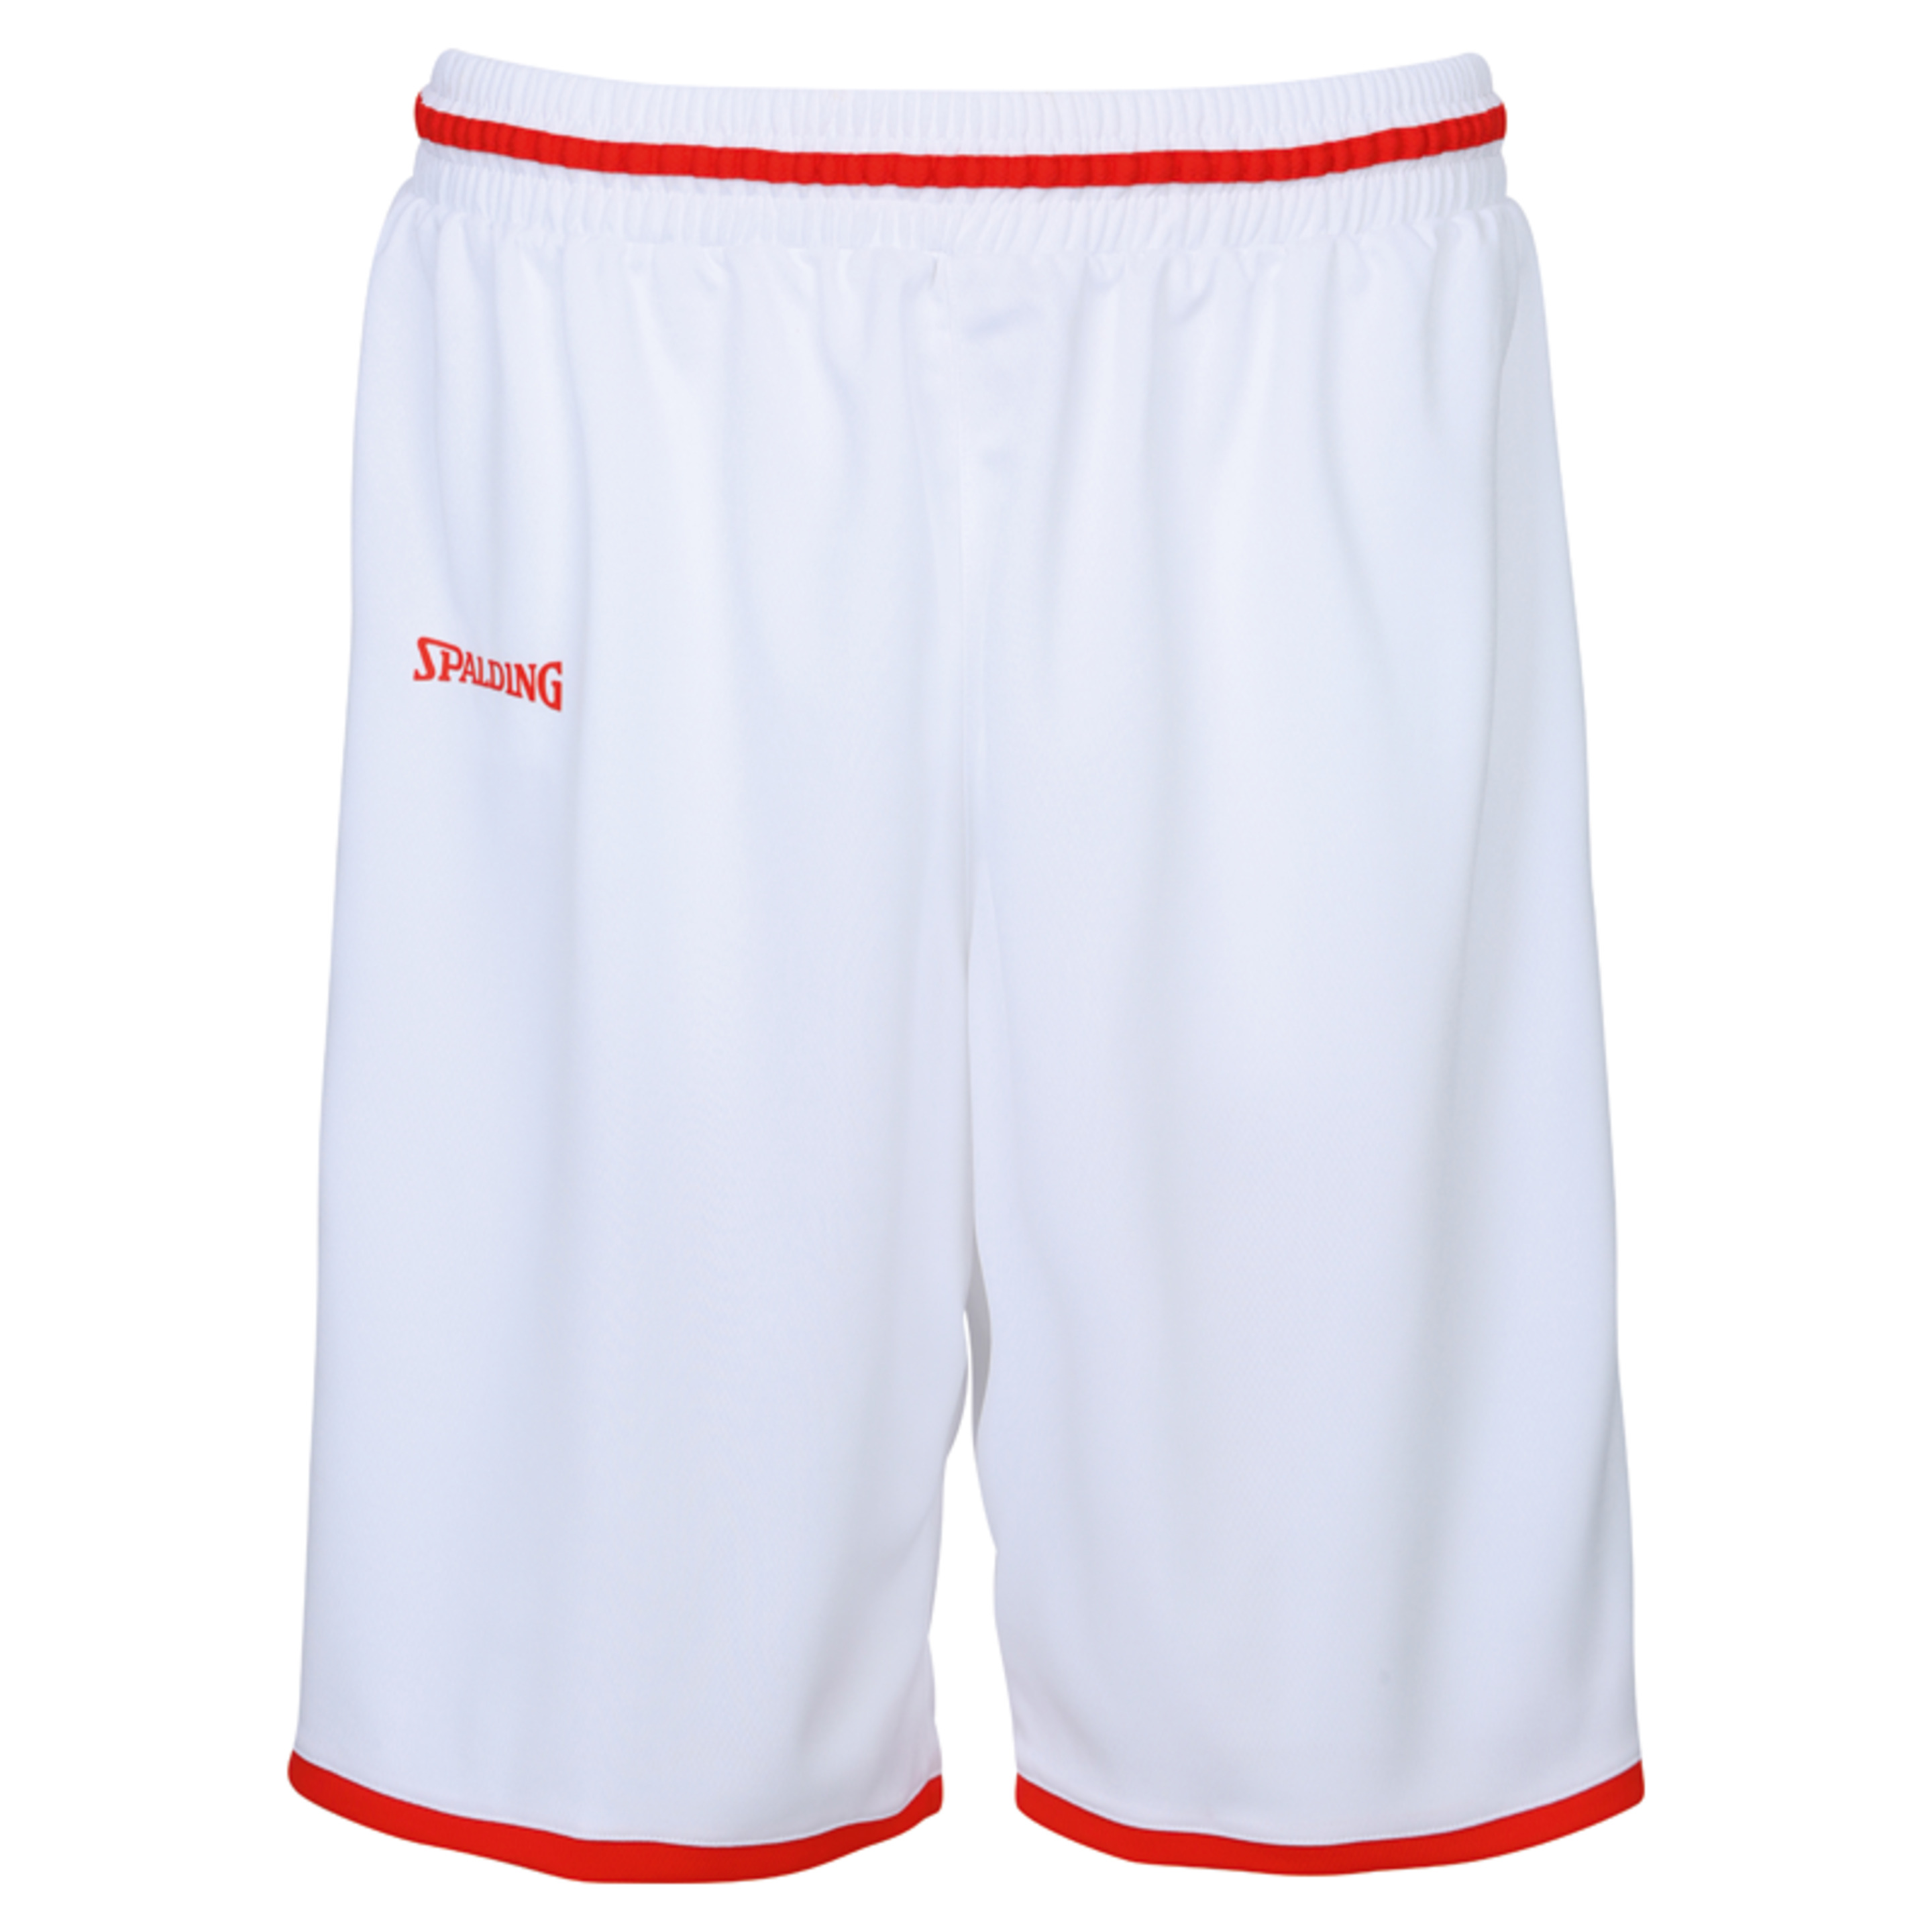 Move Shorts Blanco/rojo Spalding - blanco-rojo - 